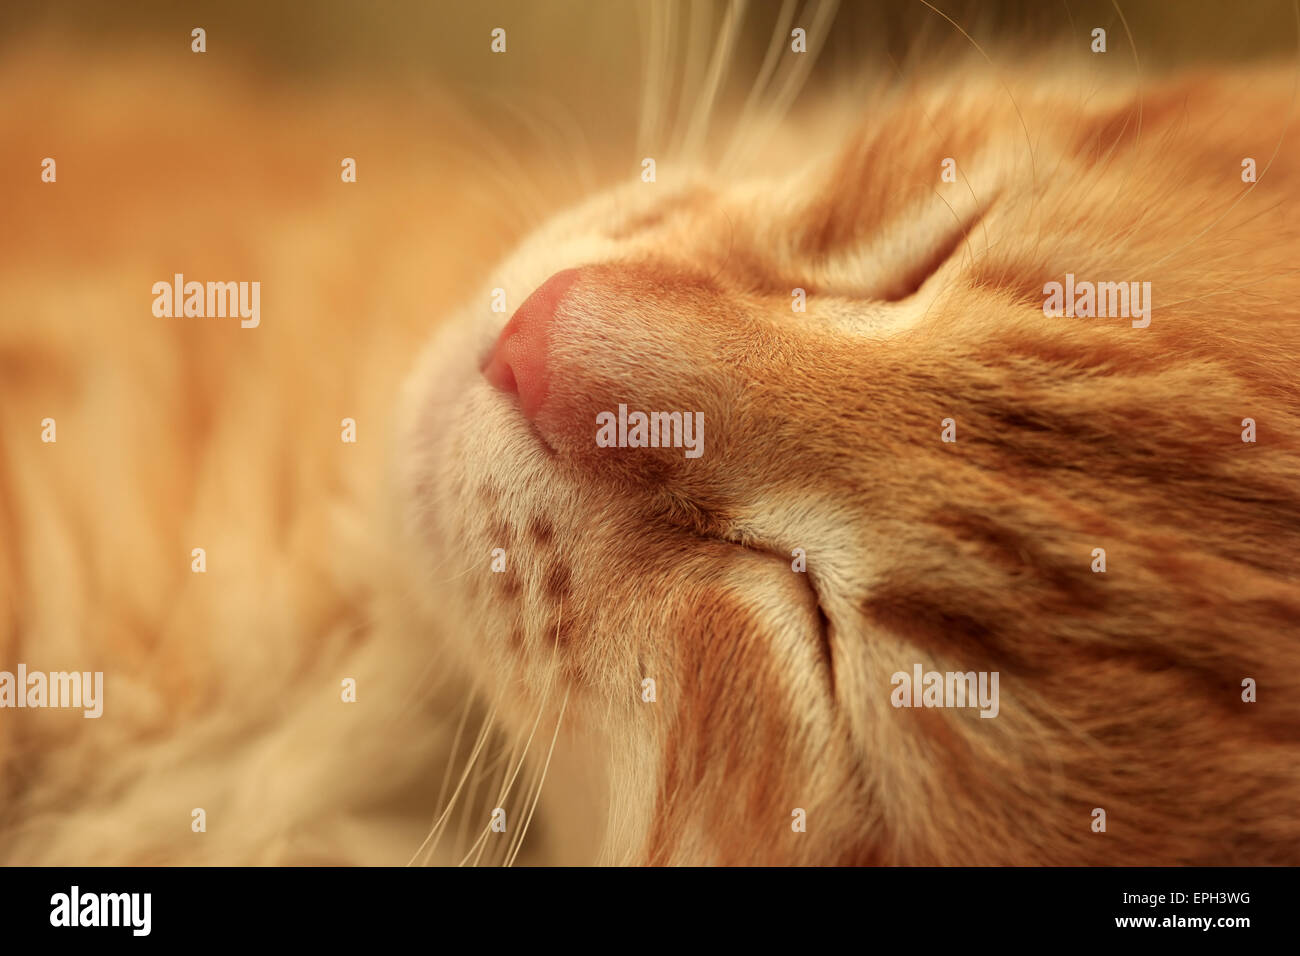 sleepy kitten Stock Photo